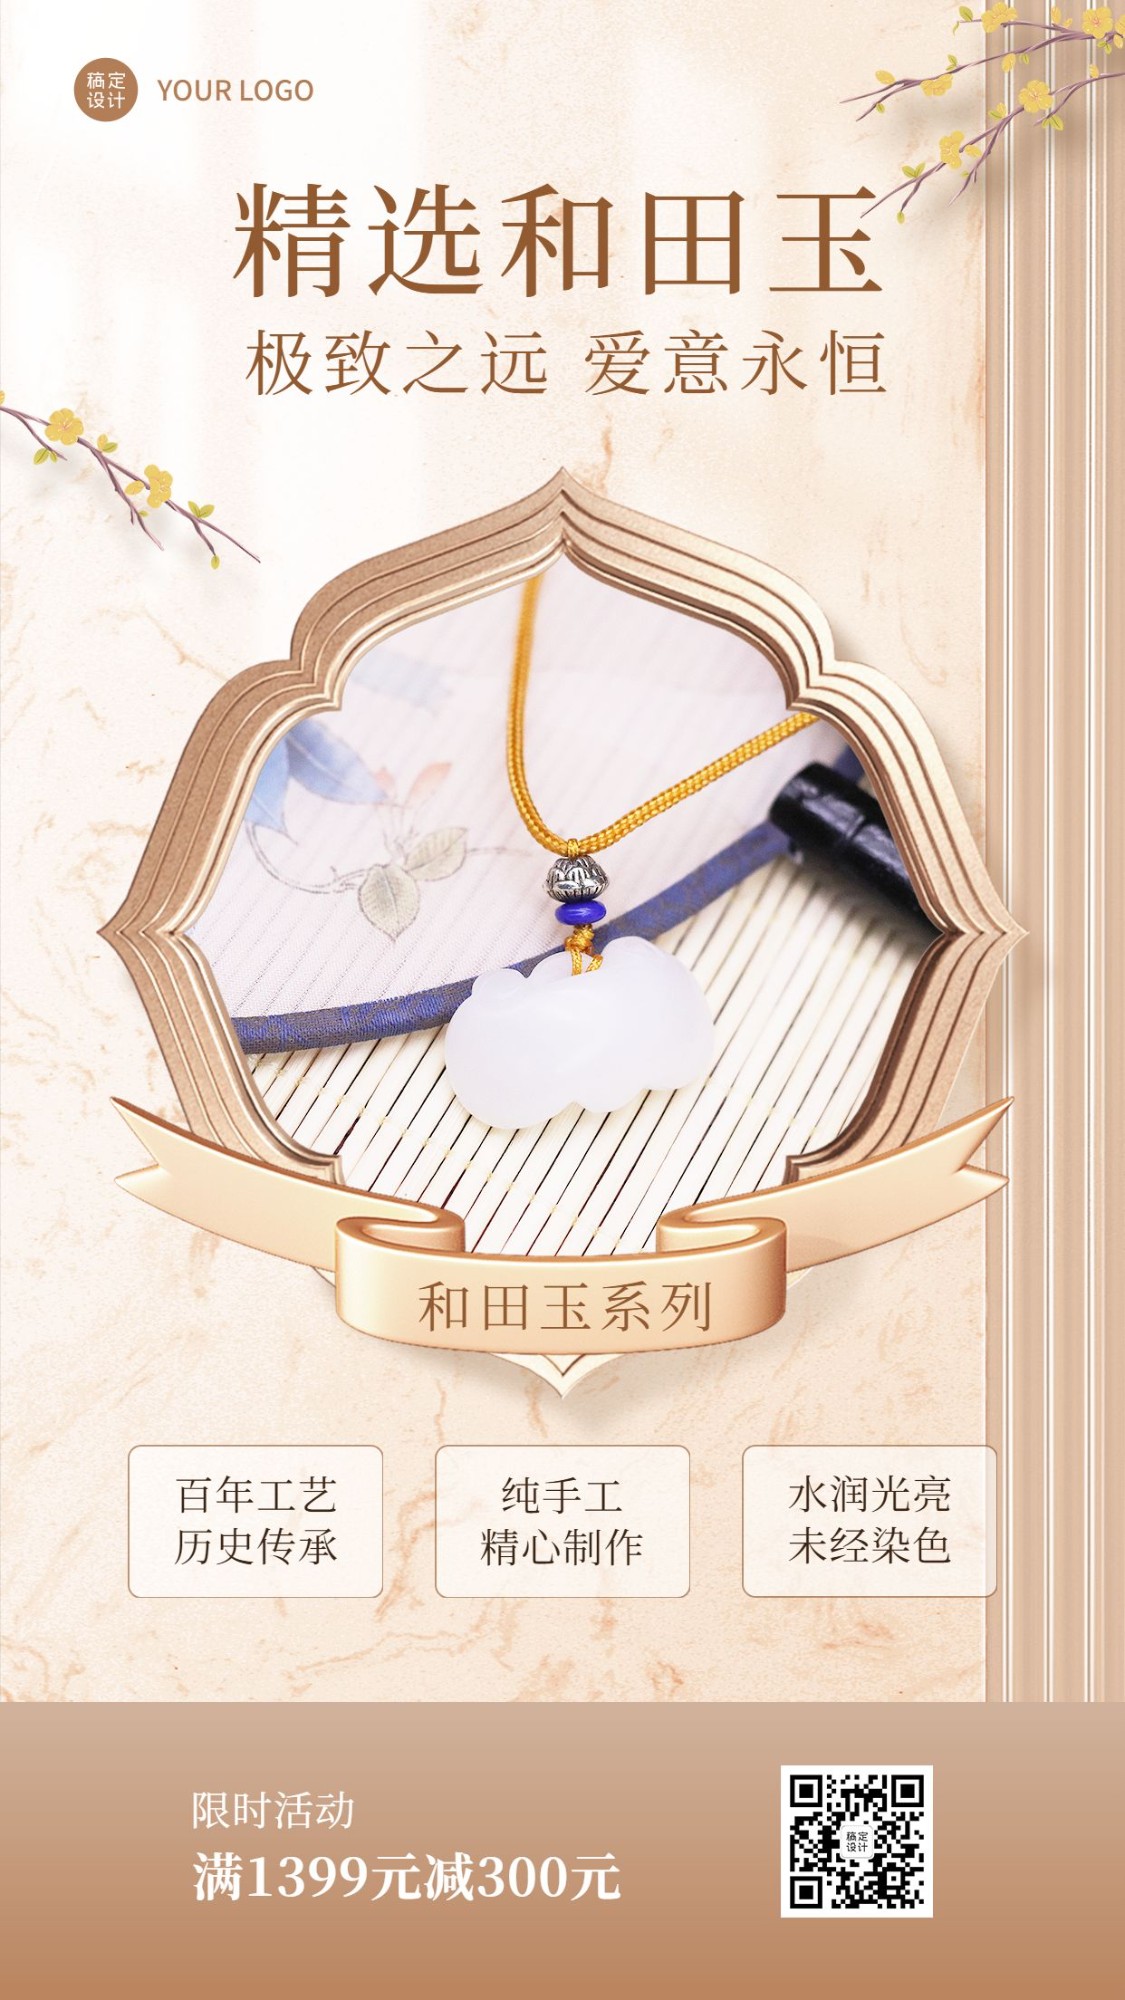 珠宝首饰和田玉产品营销展示中国风手机海报预览效果